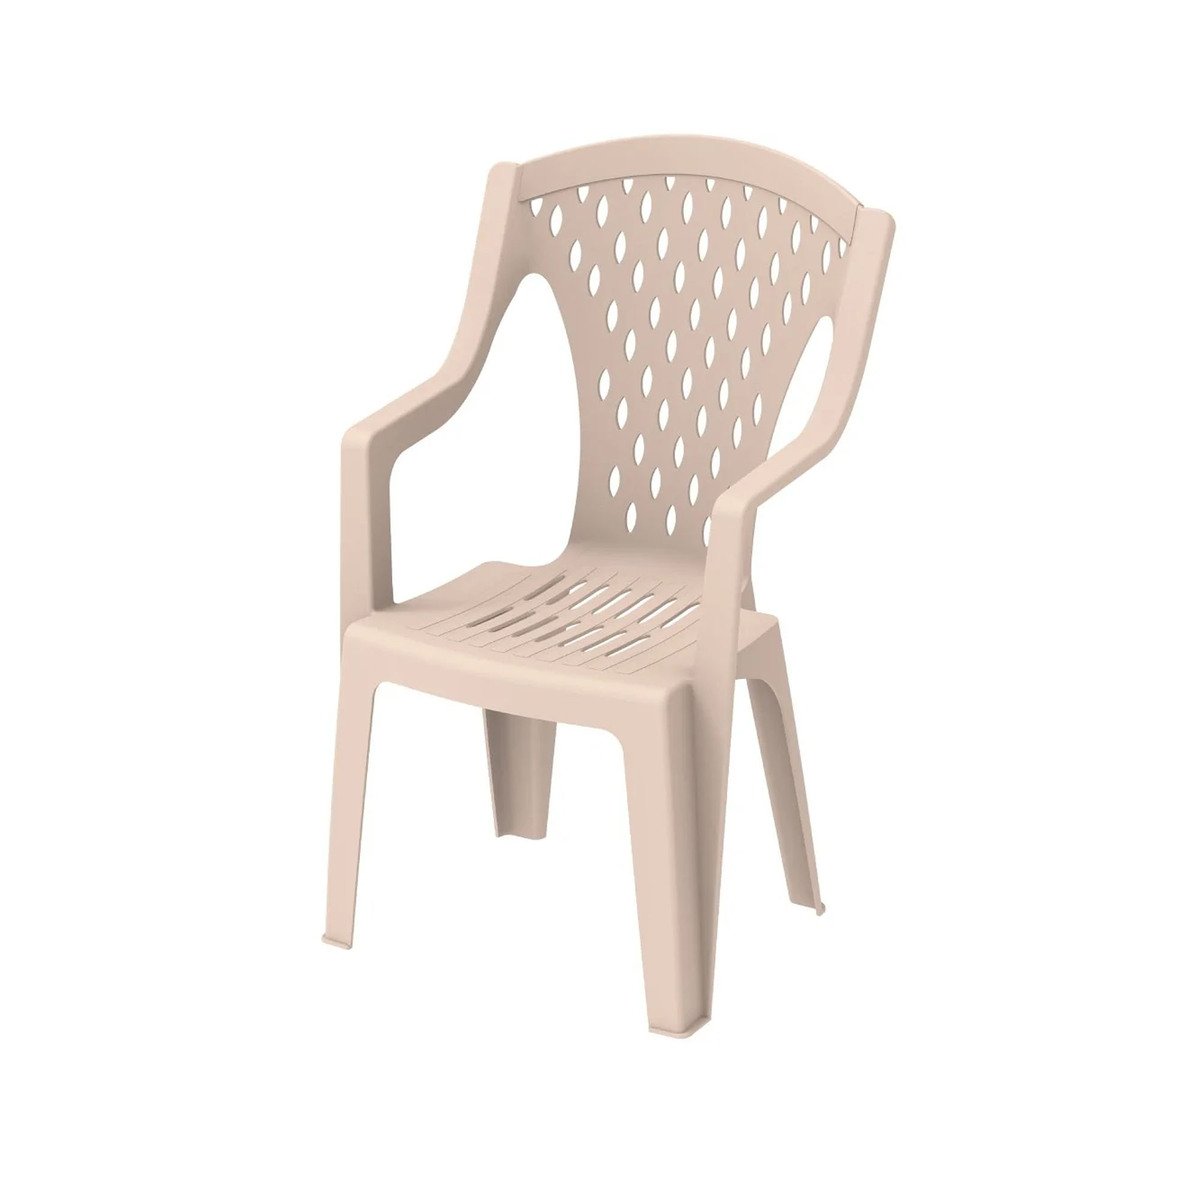 Cosmoplast Queen Outdoor Garden Chair IFOFAC007 Assorted Color